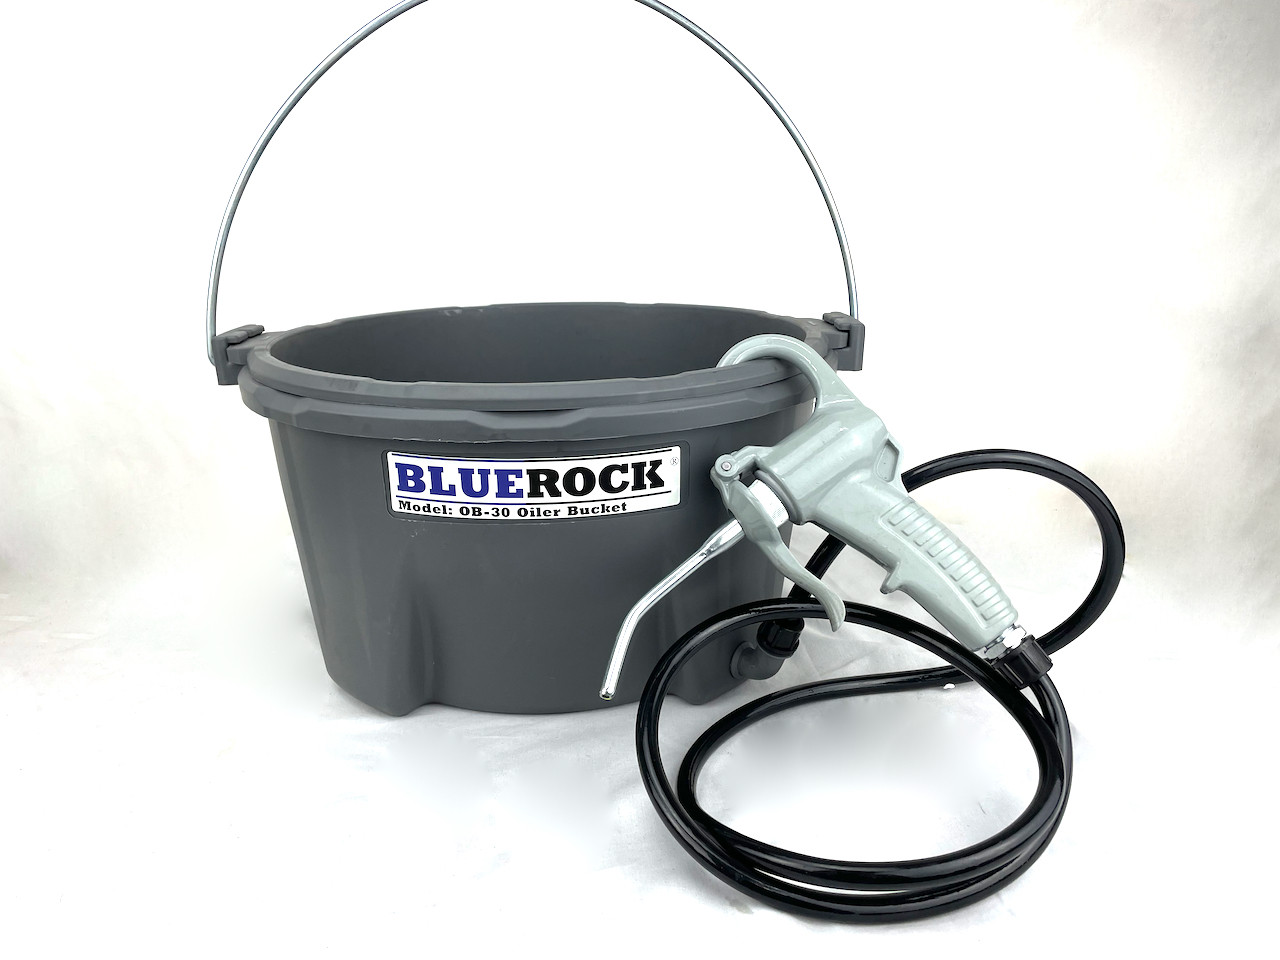 BLUEROCK OB-30 Hand Held Oiler Bucket for Pipe Threading fits Ridgid 418 300